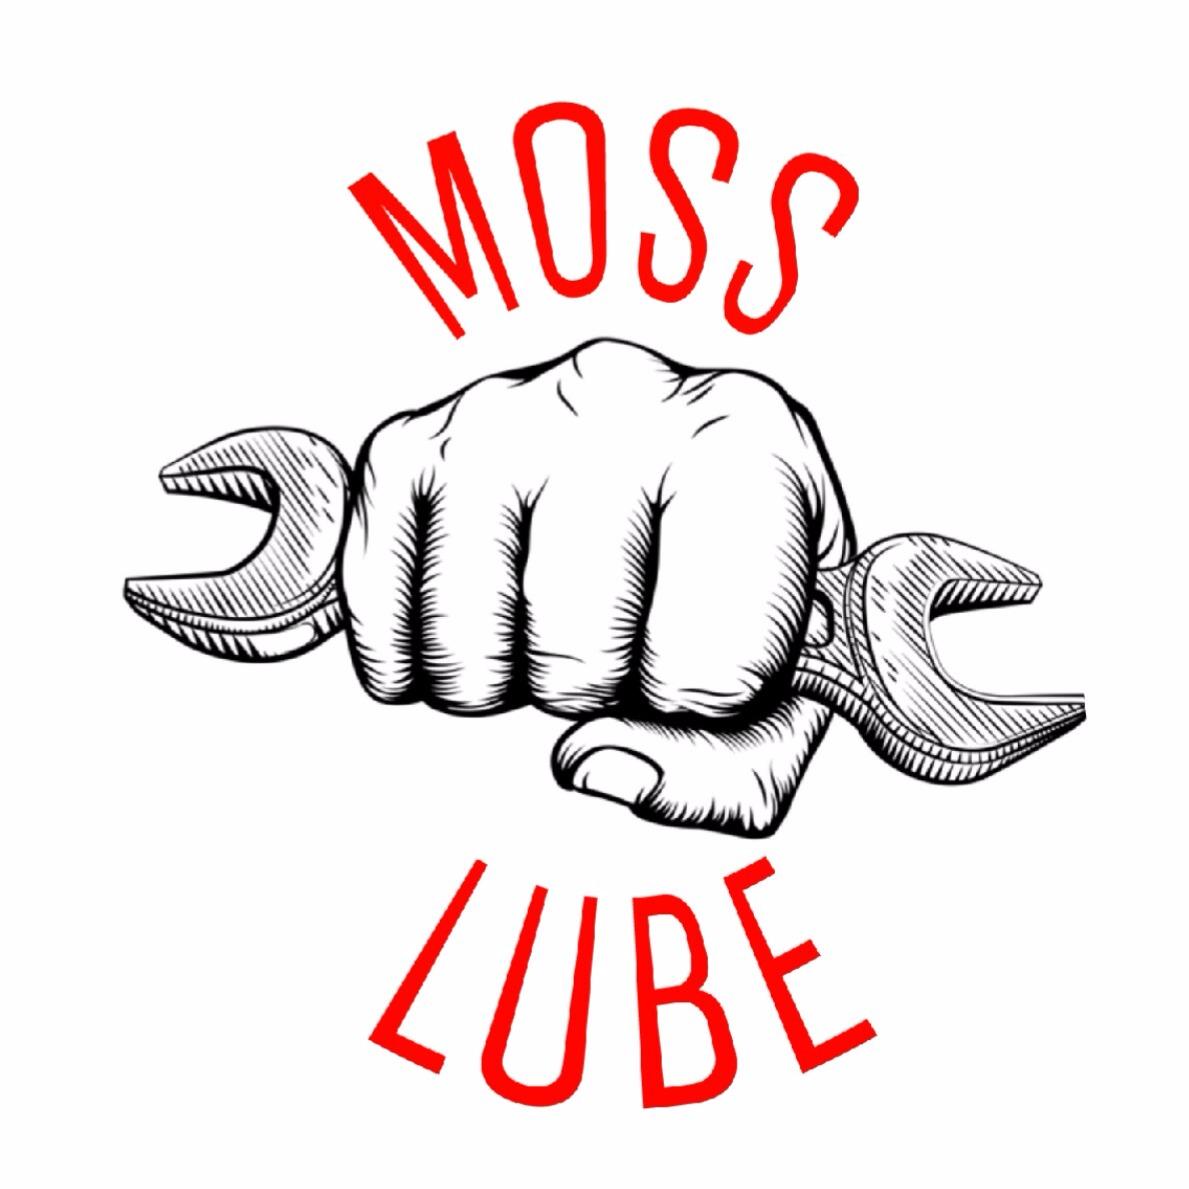 Moss Lube - Lafayette, LA 70501 - (337)266-4747 | ShowMeLocal.com